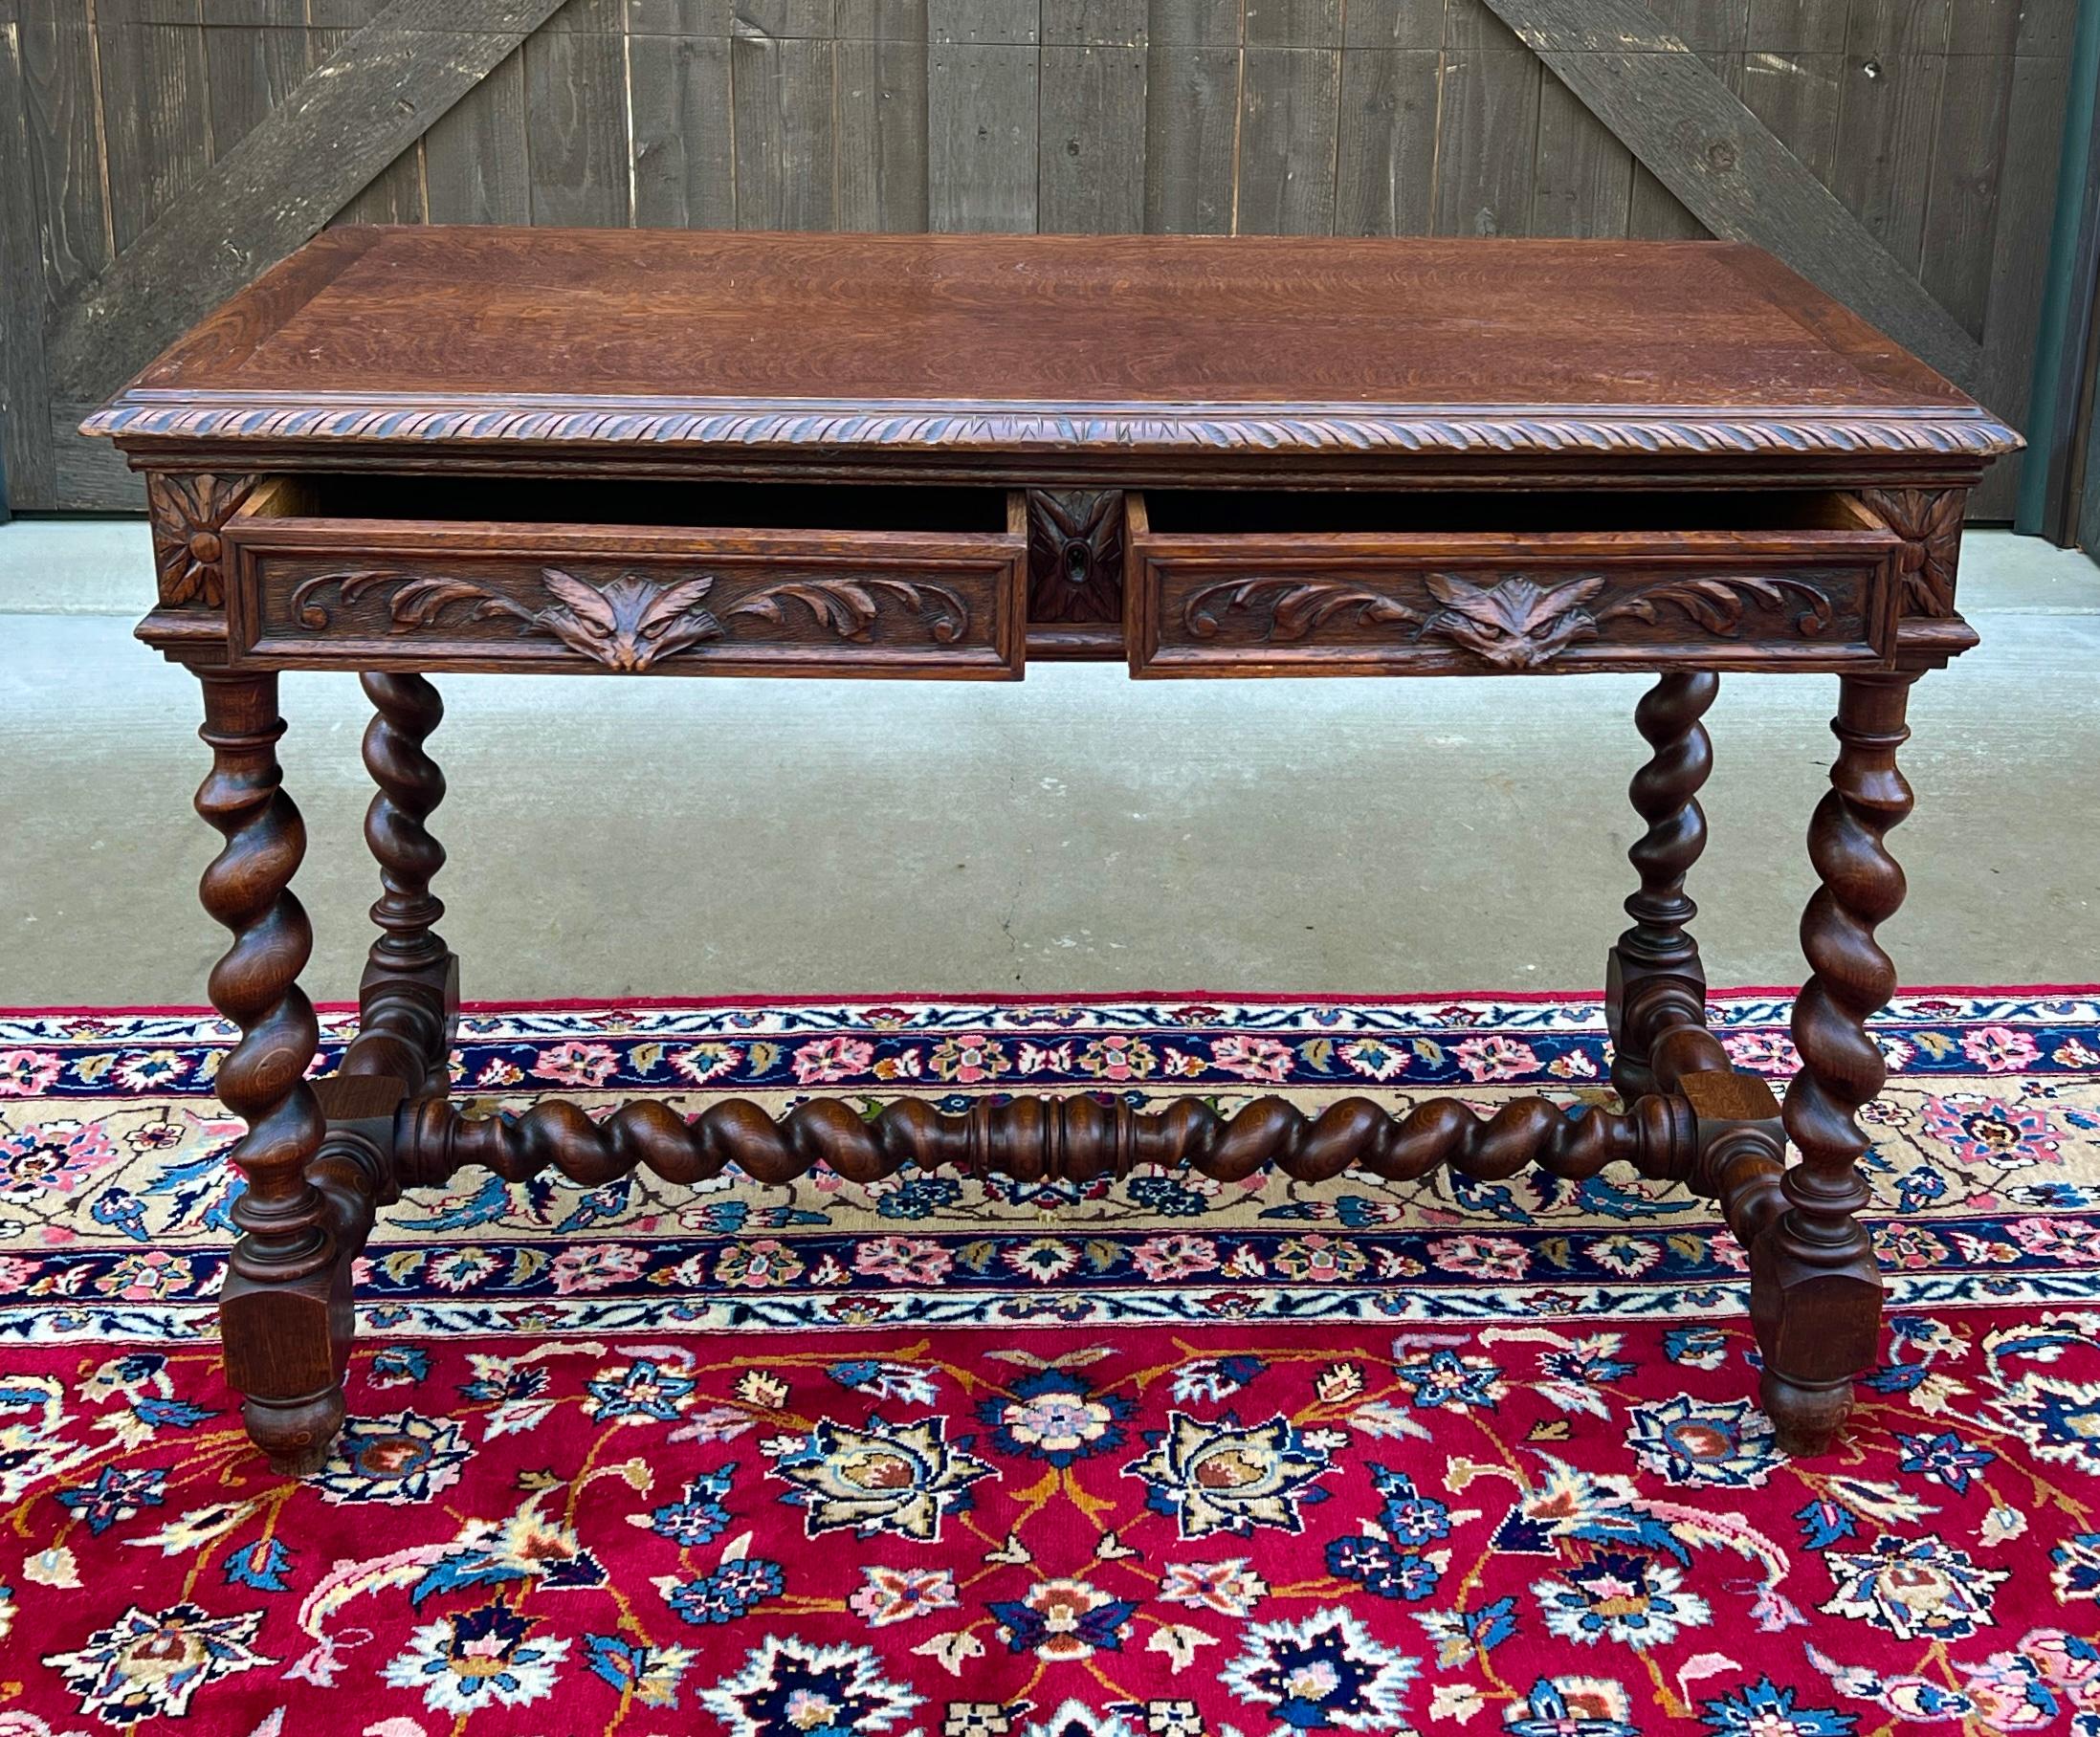 Antique French Desk Table Renaissance Revival Barley Twist Carved Tiger Oak 19C For Sale 5